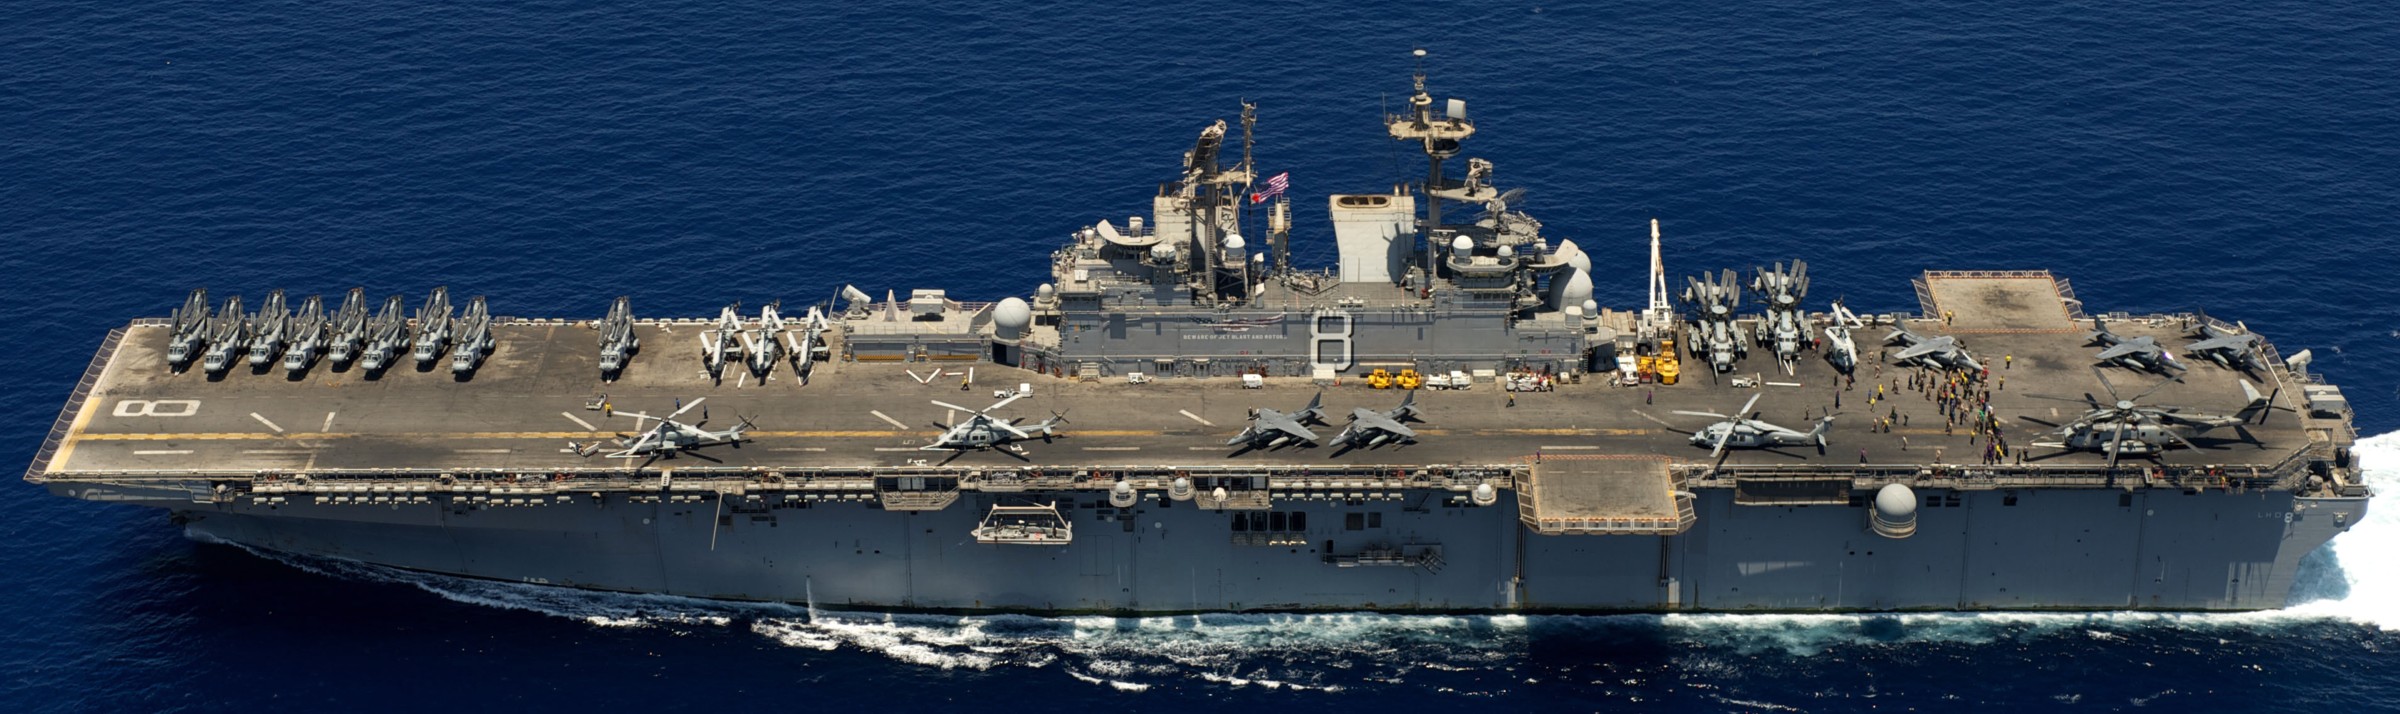 lhd-8 uss makin island amphibious assault ship landing helicopter dock us navy hmm-268 marines indian ocean 57